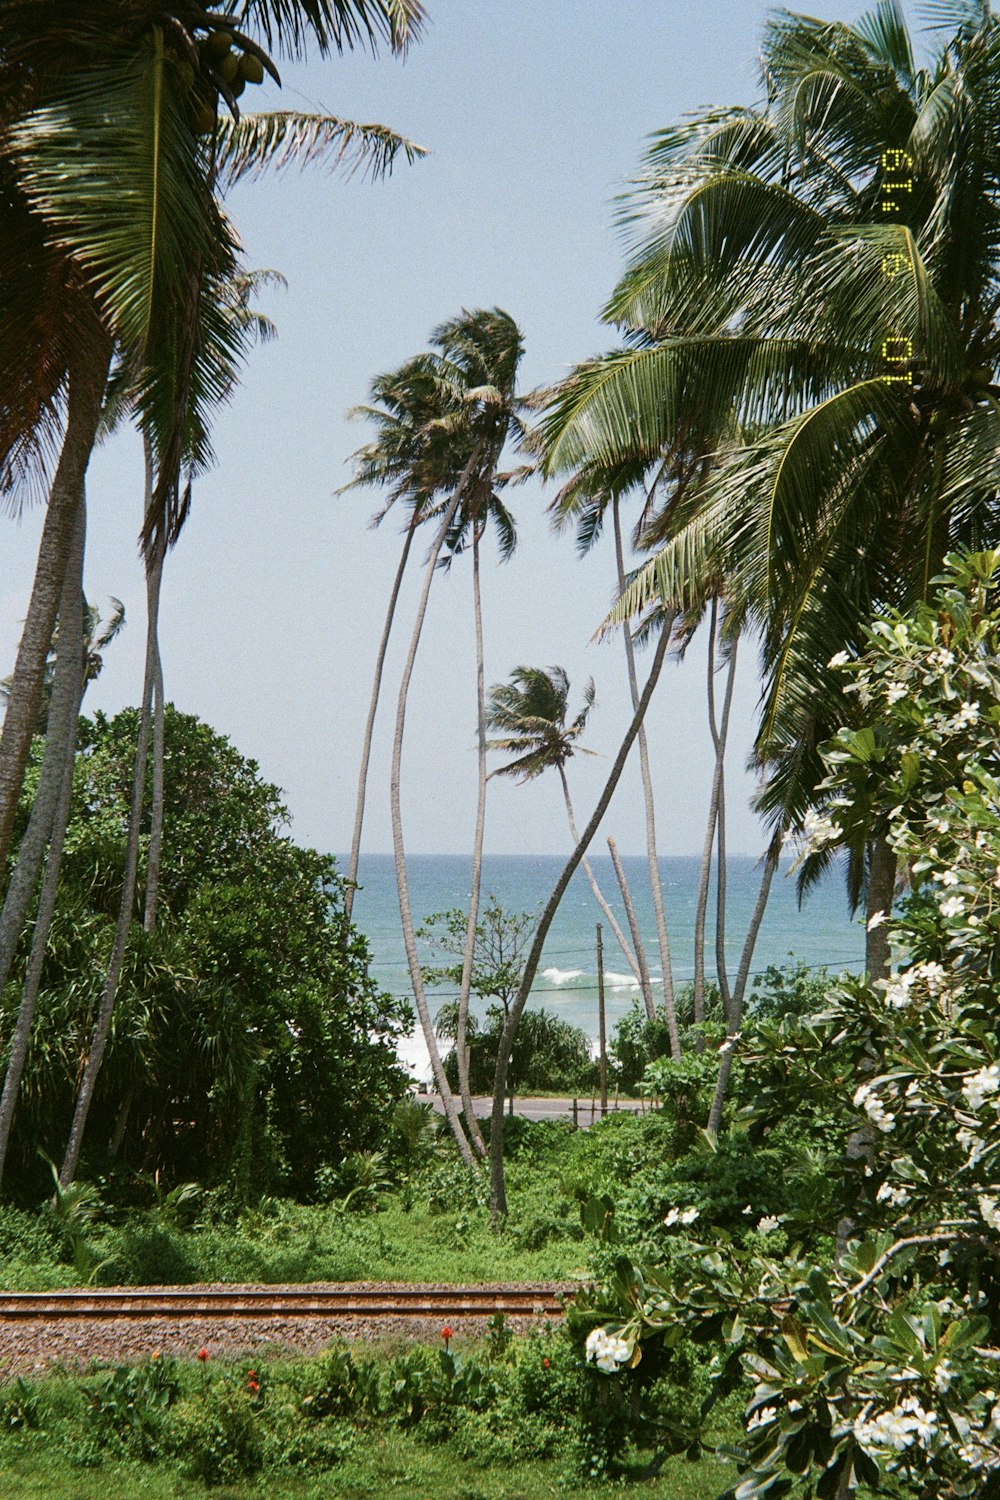 a view of a beach through palm trees